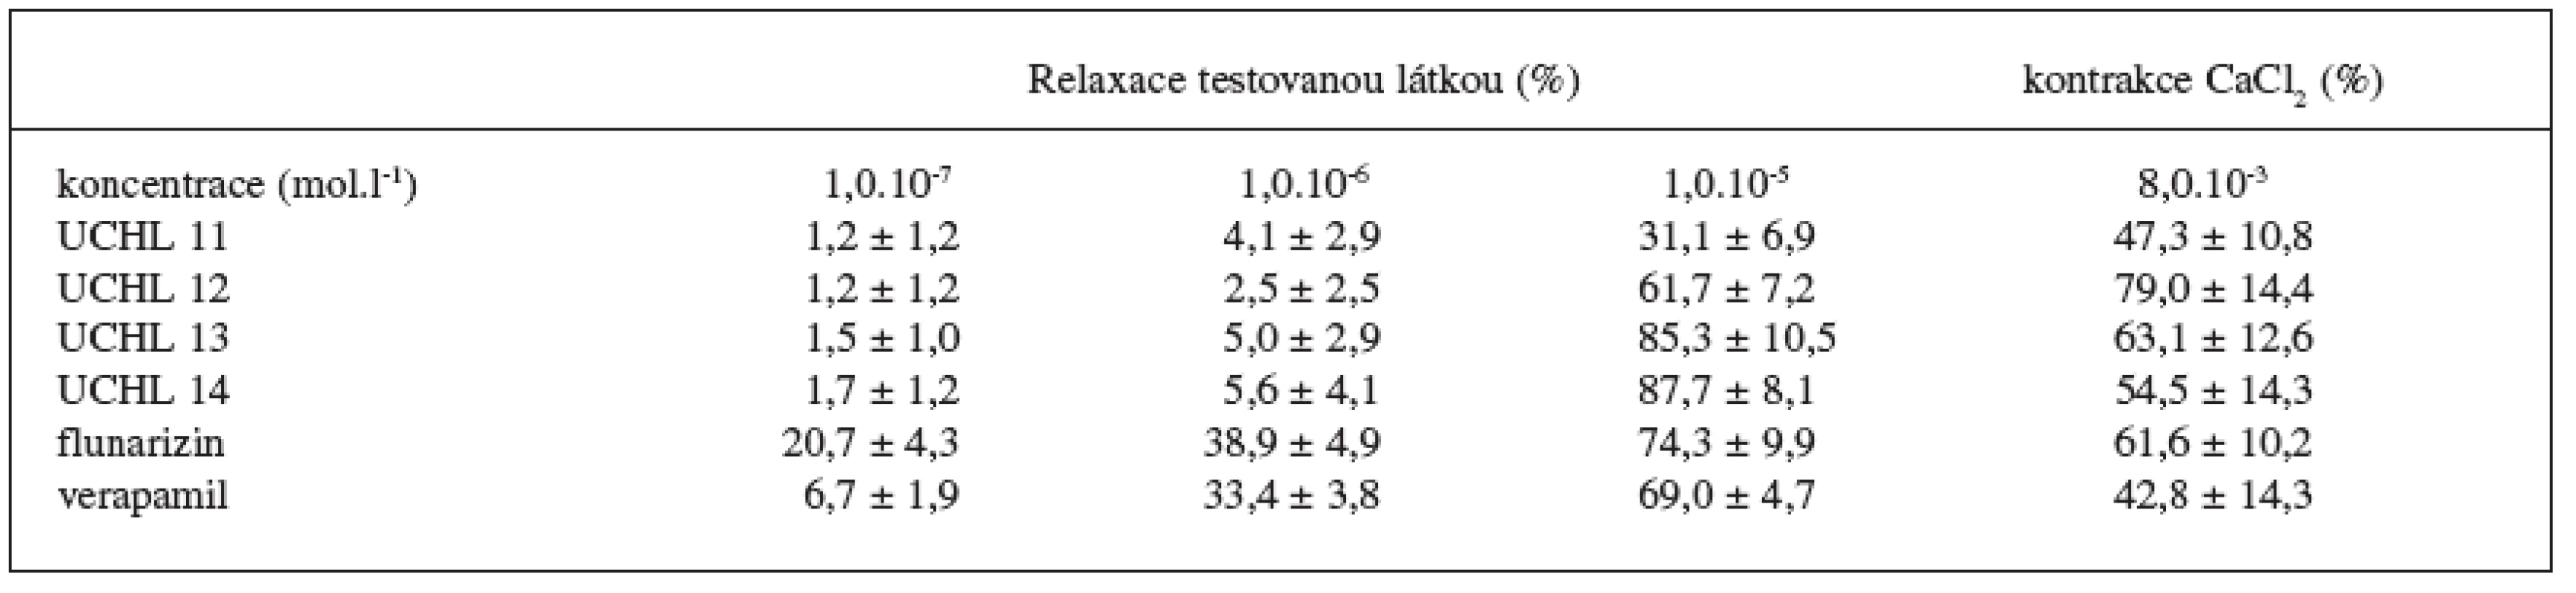 Relaxační efekt testovaných látek na KCl depolarizované izolované aorty potkanů. Výsledky jsou průměrem ze 7 měření ± S.E.M.